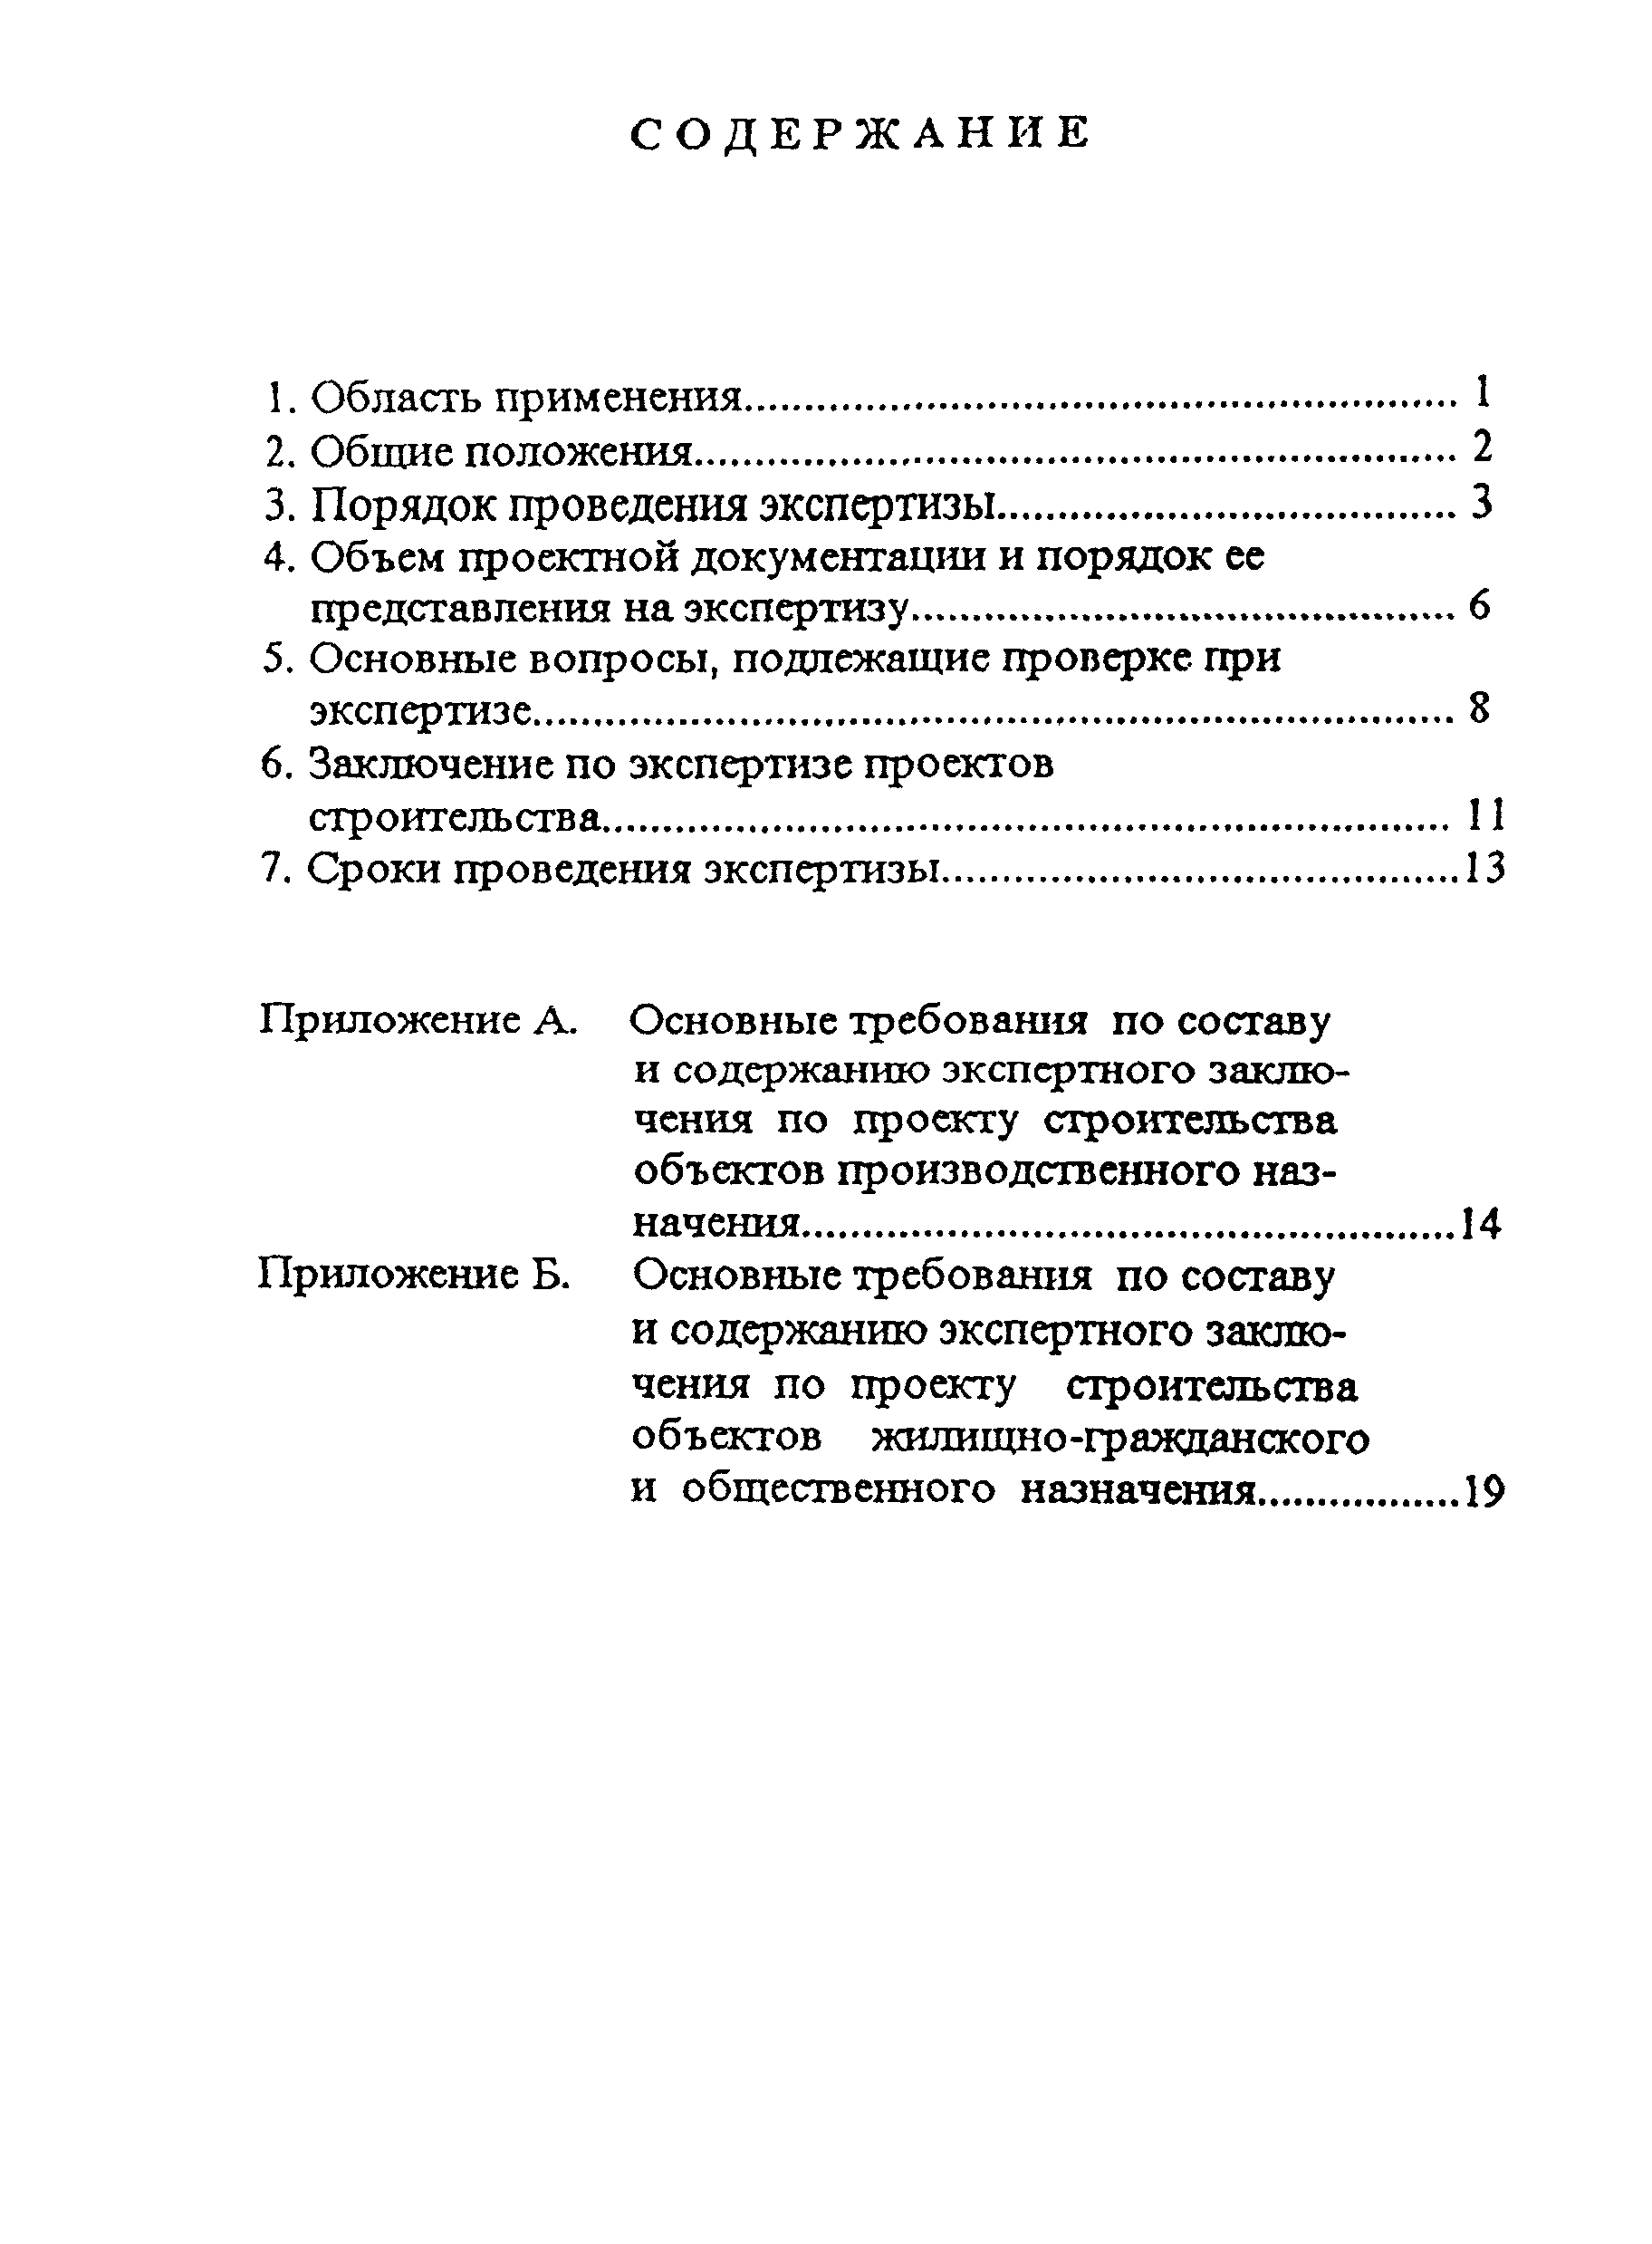 РДС 11-201-95